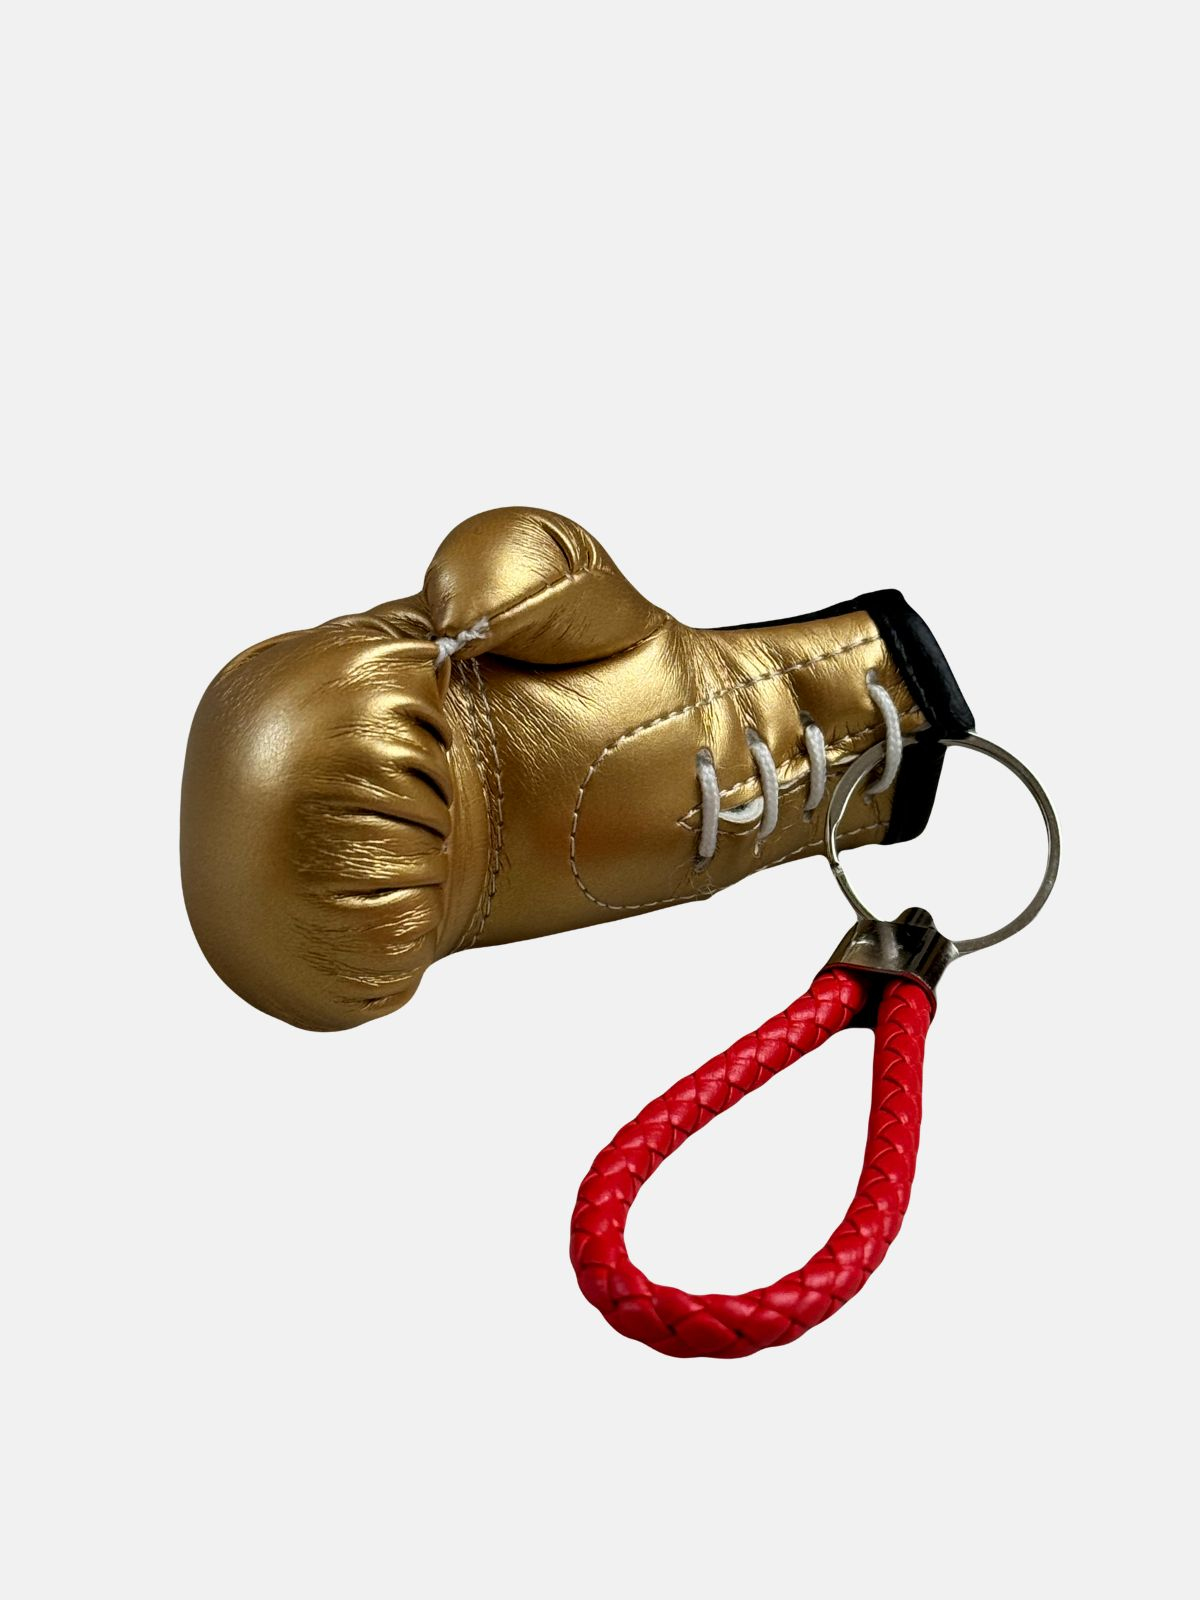 Peresvit Jewelry Boxing Glove Gold, Photo No. 2